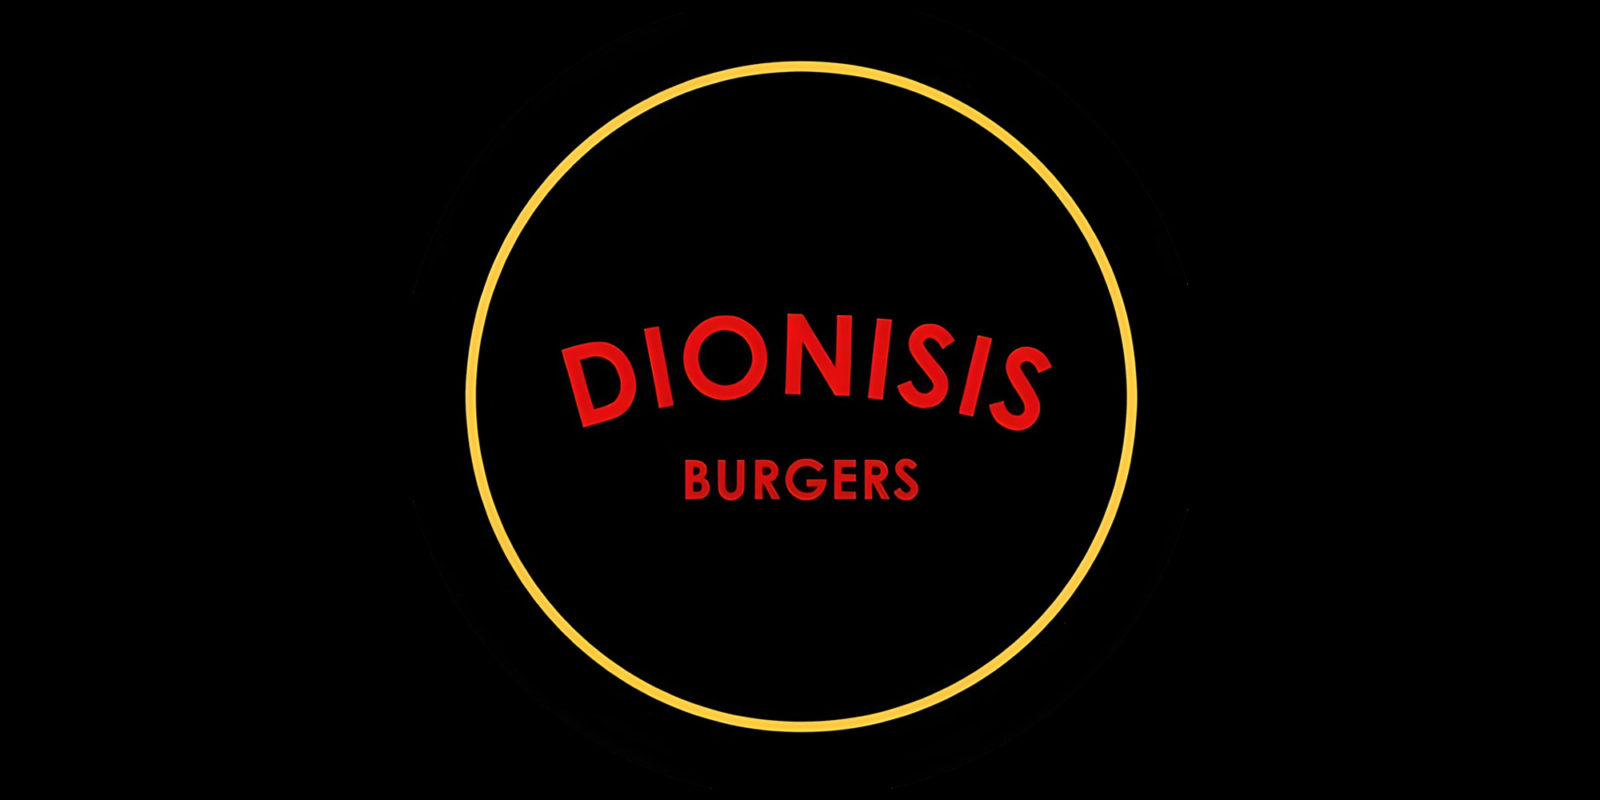 dionisis burgers hamburgueseria comidas restaurances cocteleria en berazategui